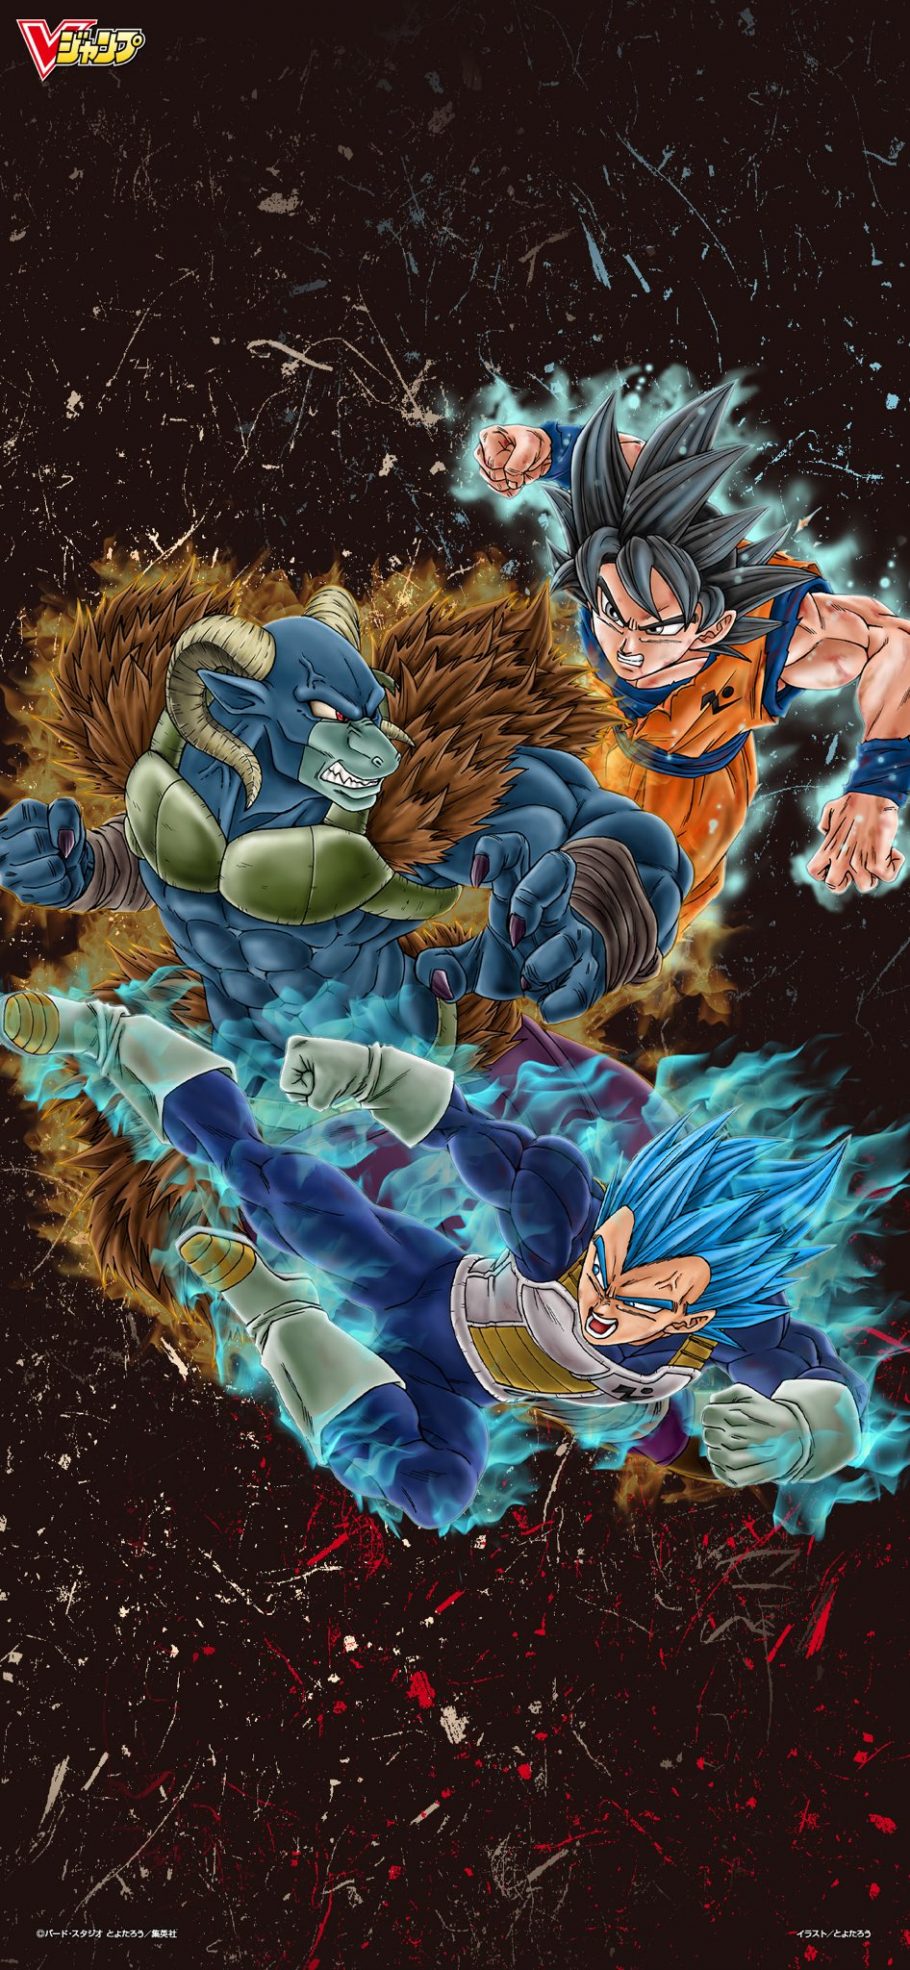 Wallpaper oficial de Dragon Ball Super traz Goku e Vegeta lutando contra Moro